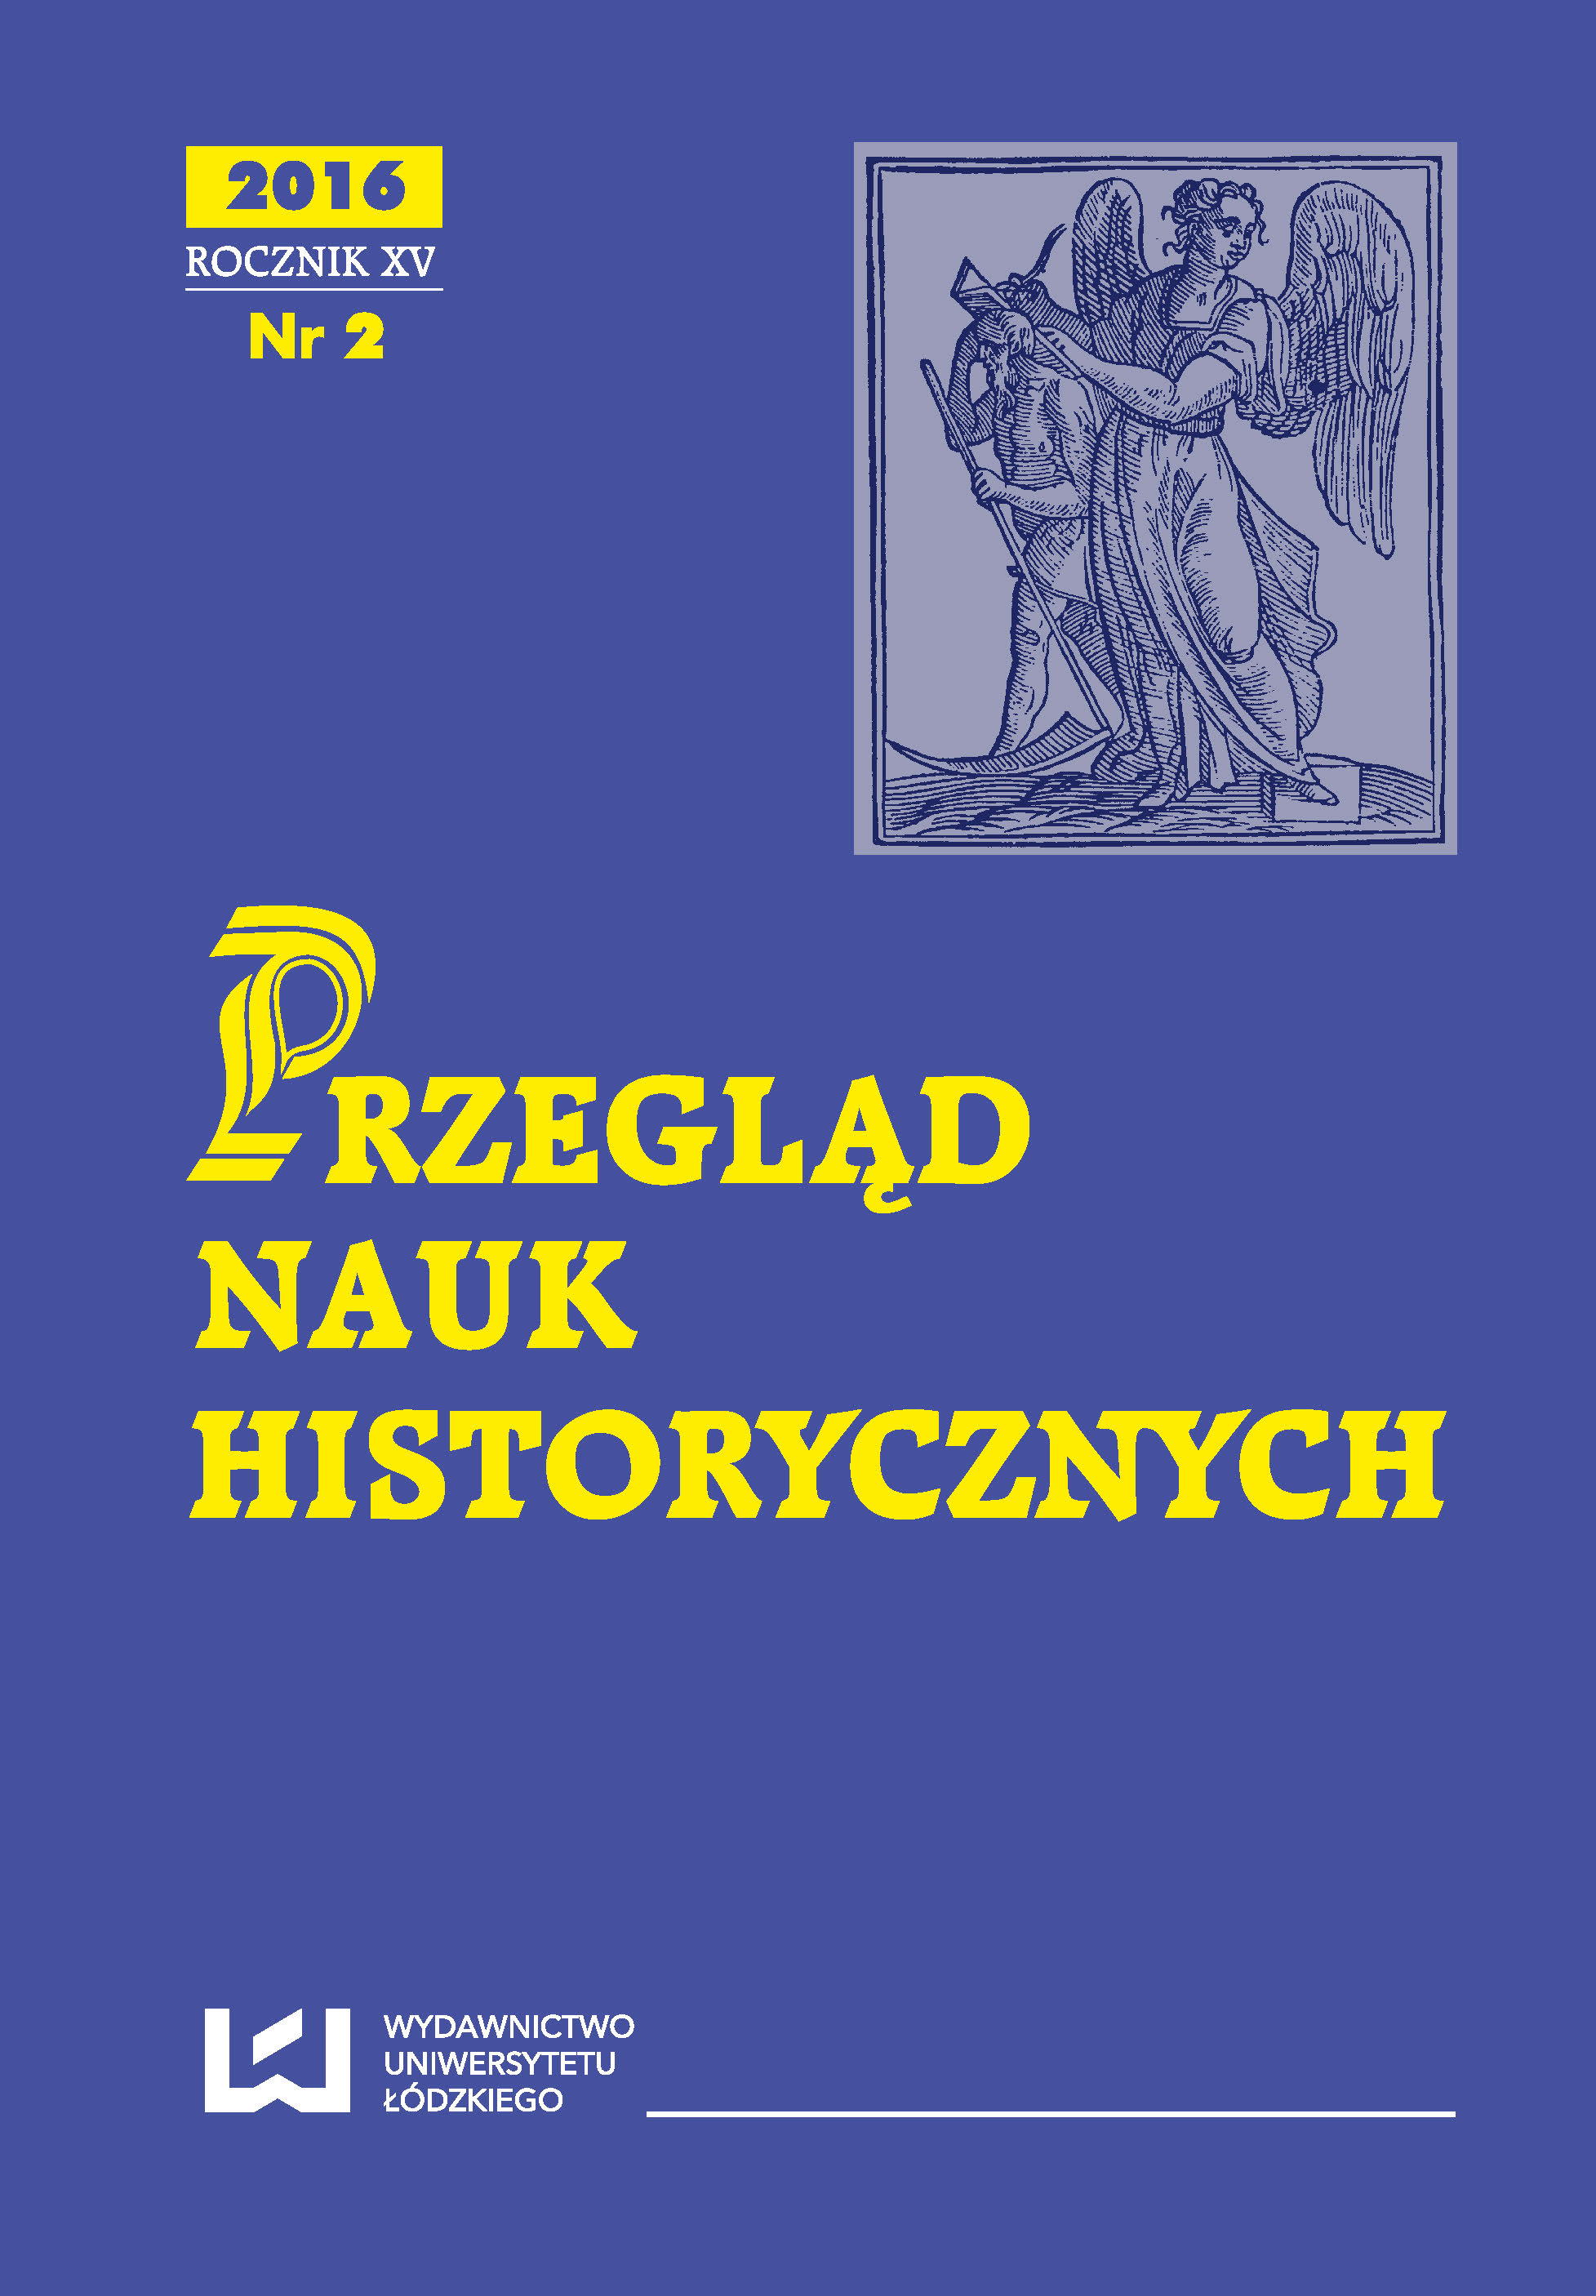 Z dziejów prasy lokalnej w II Rzeczypospolitej Żydowski „Przegląd Rzeszowski” z 1927 i 1932 roku